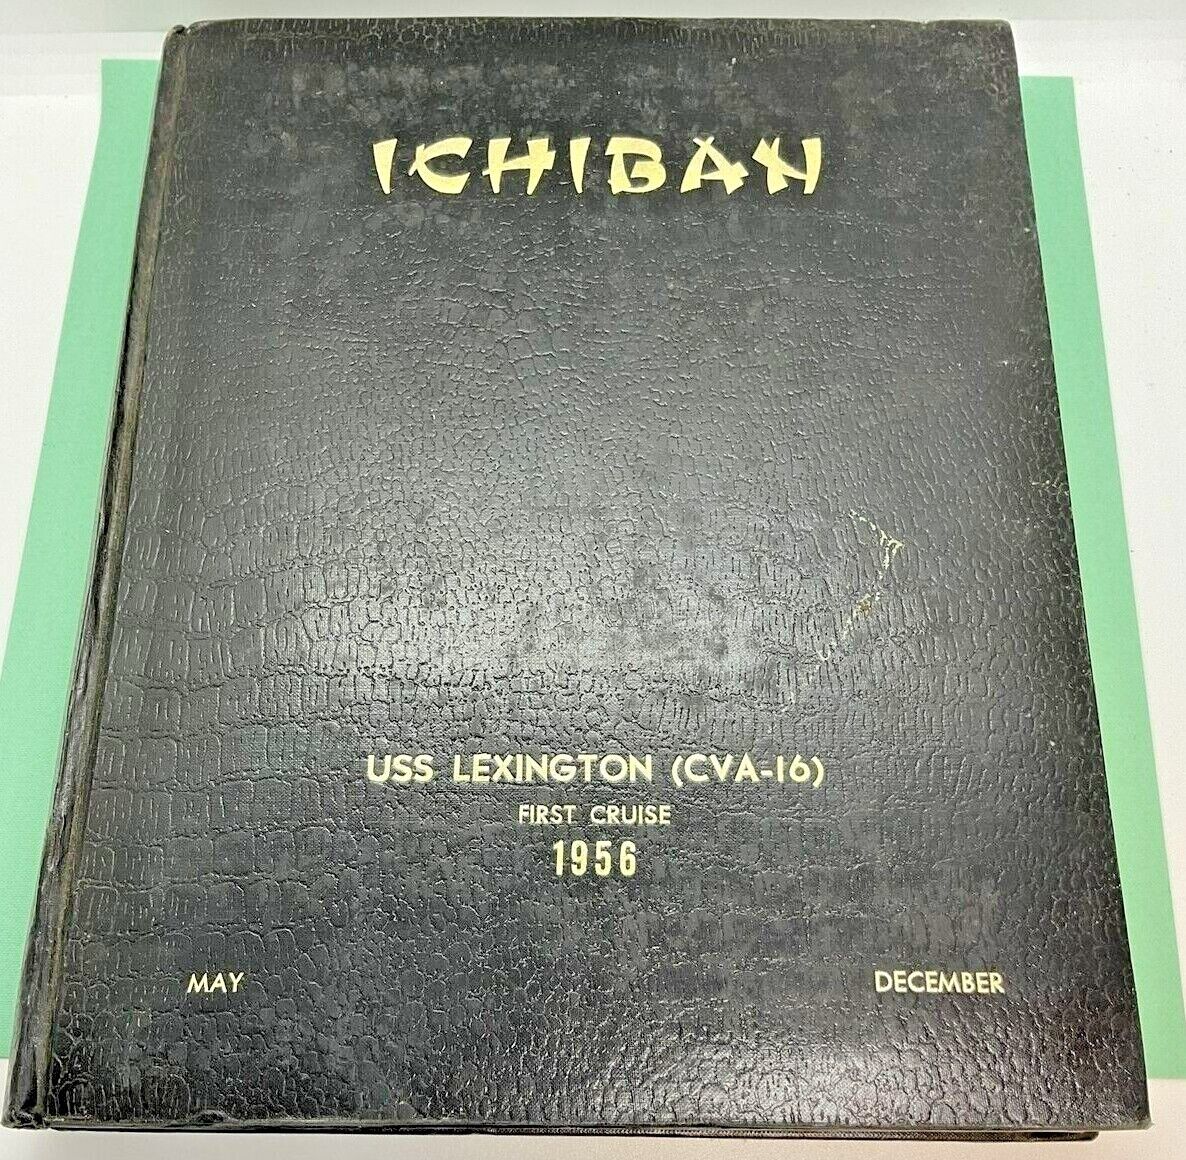 RARE Militaria Ichiban USS Lexington (CVA-16) First Cruise Book 1956 1st Westpac